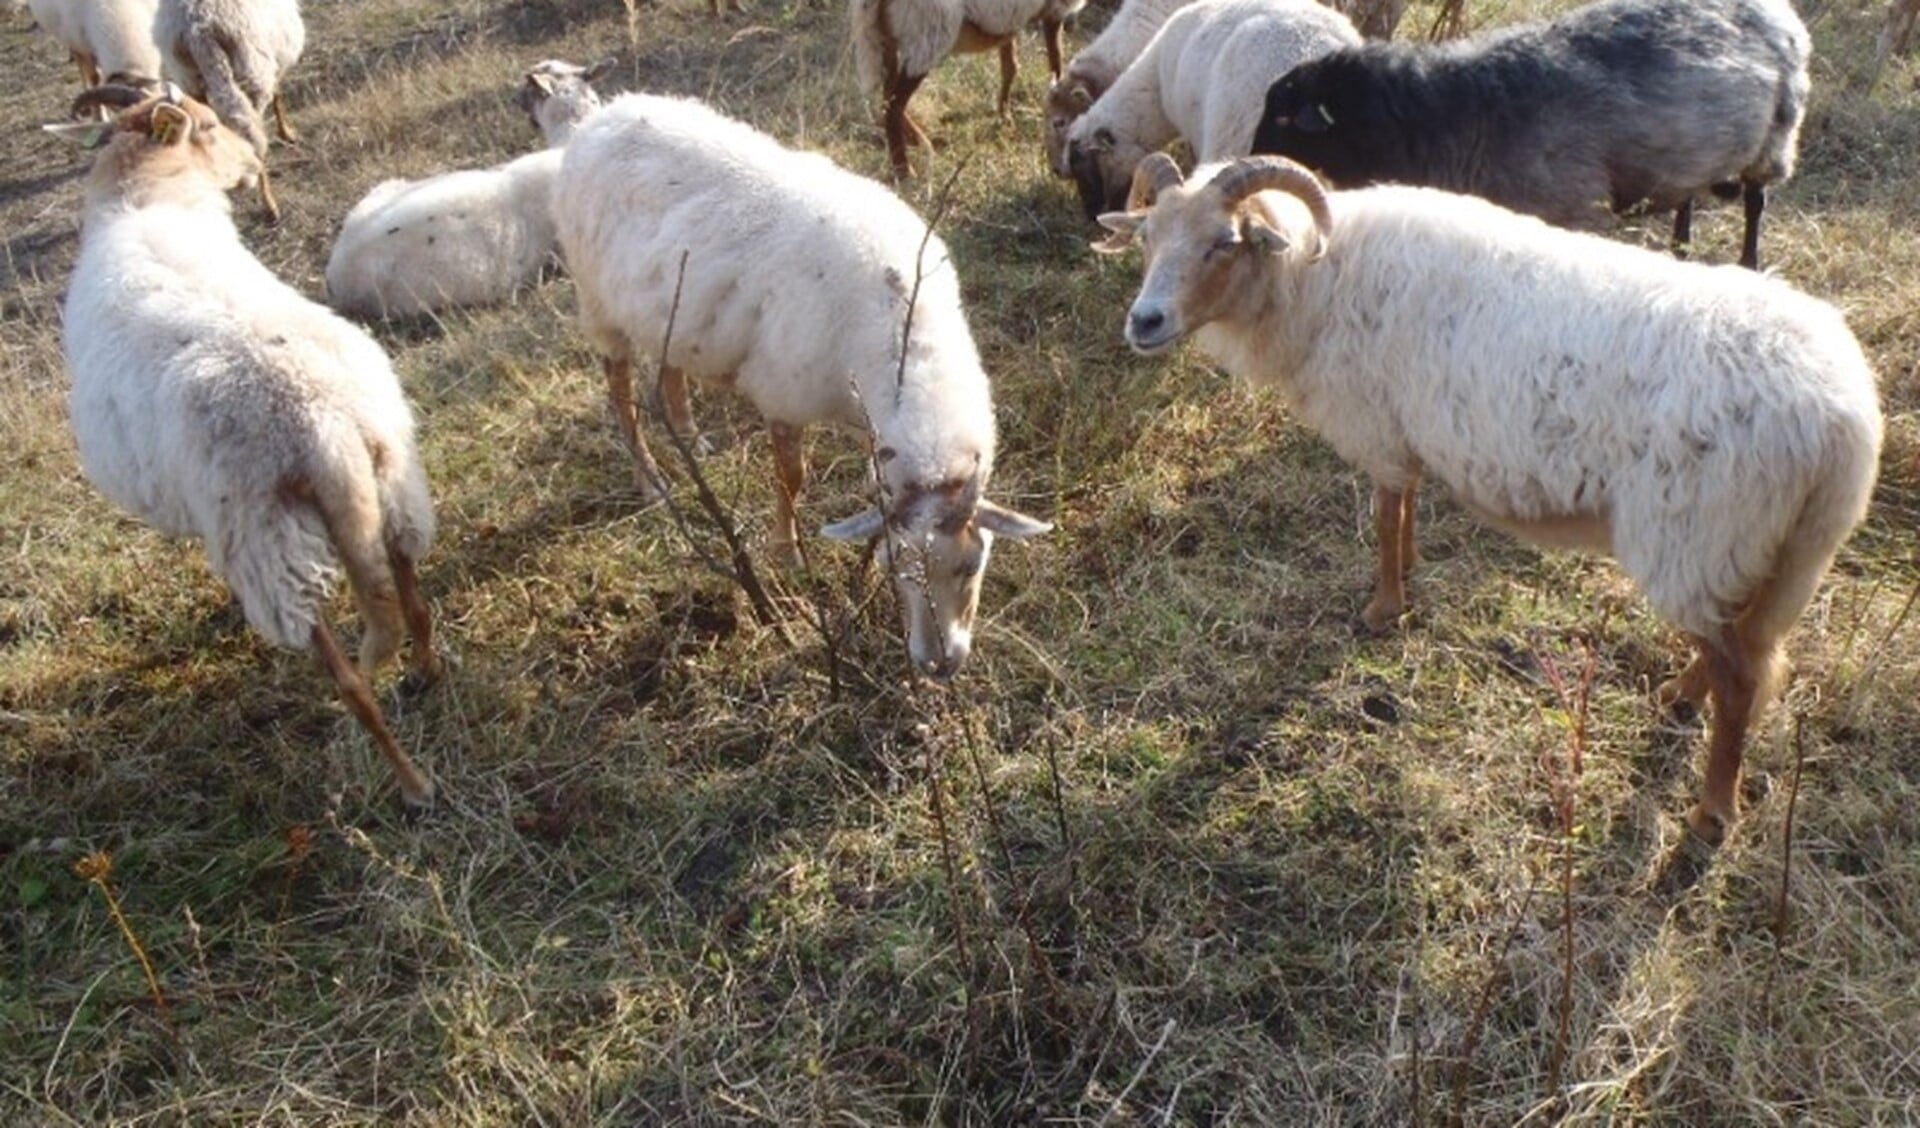 De komende weken trekt de kudde samen met herder de slikken op